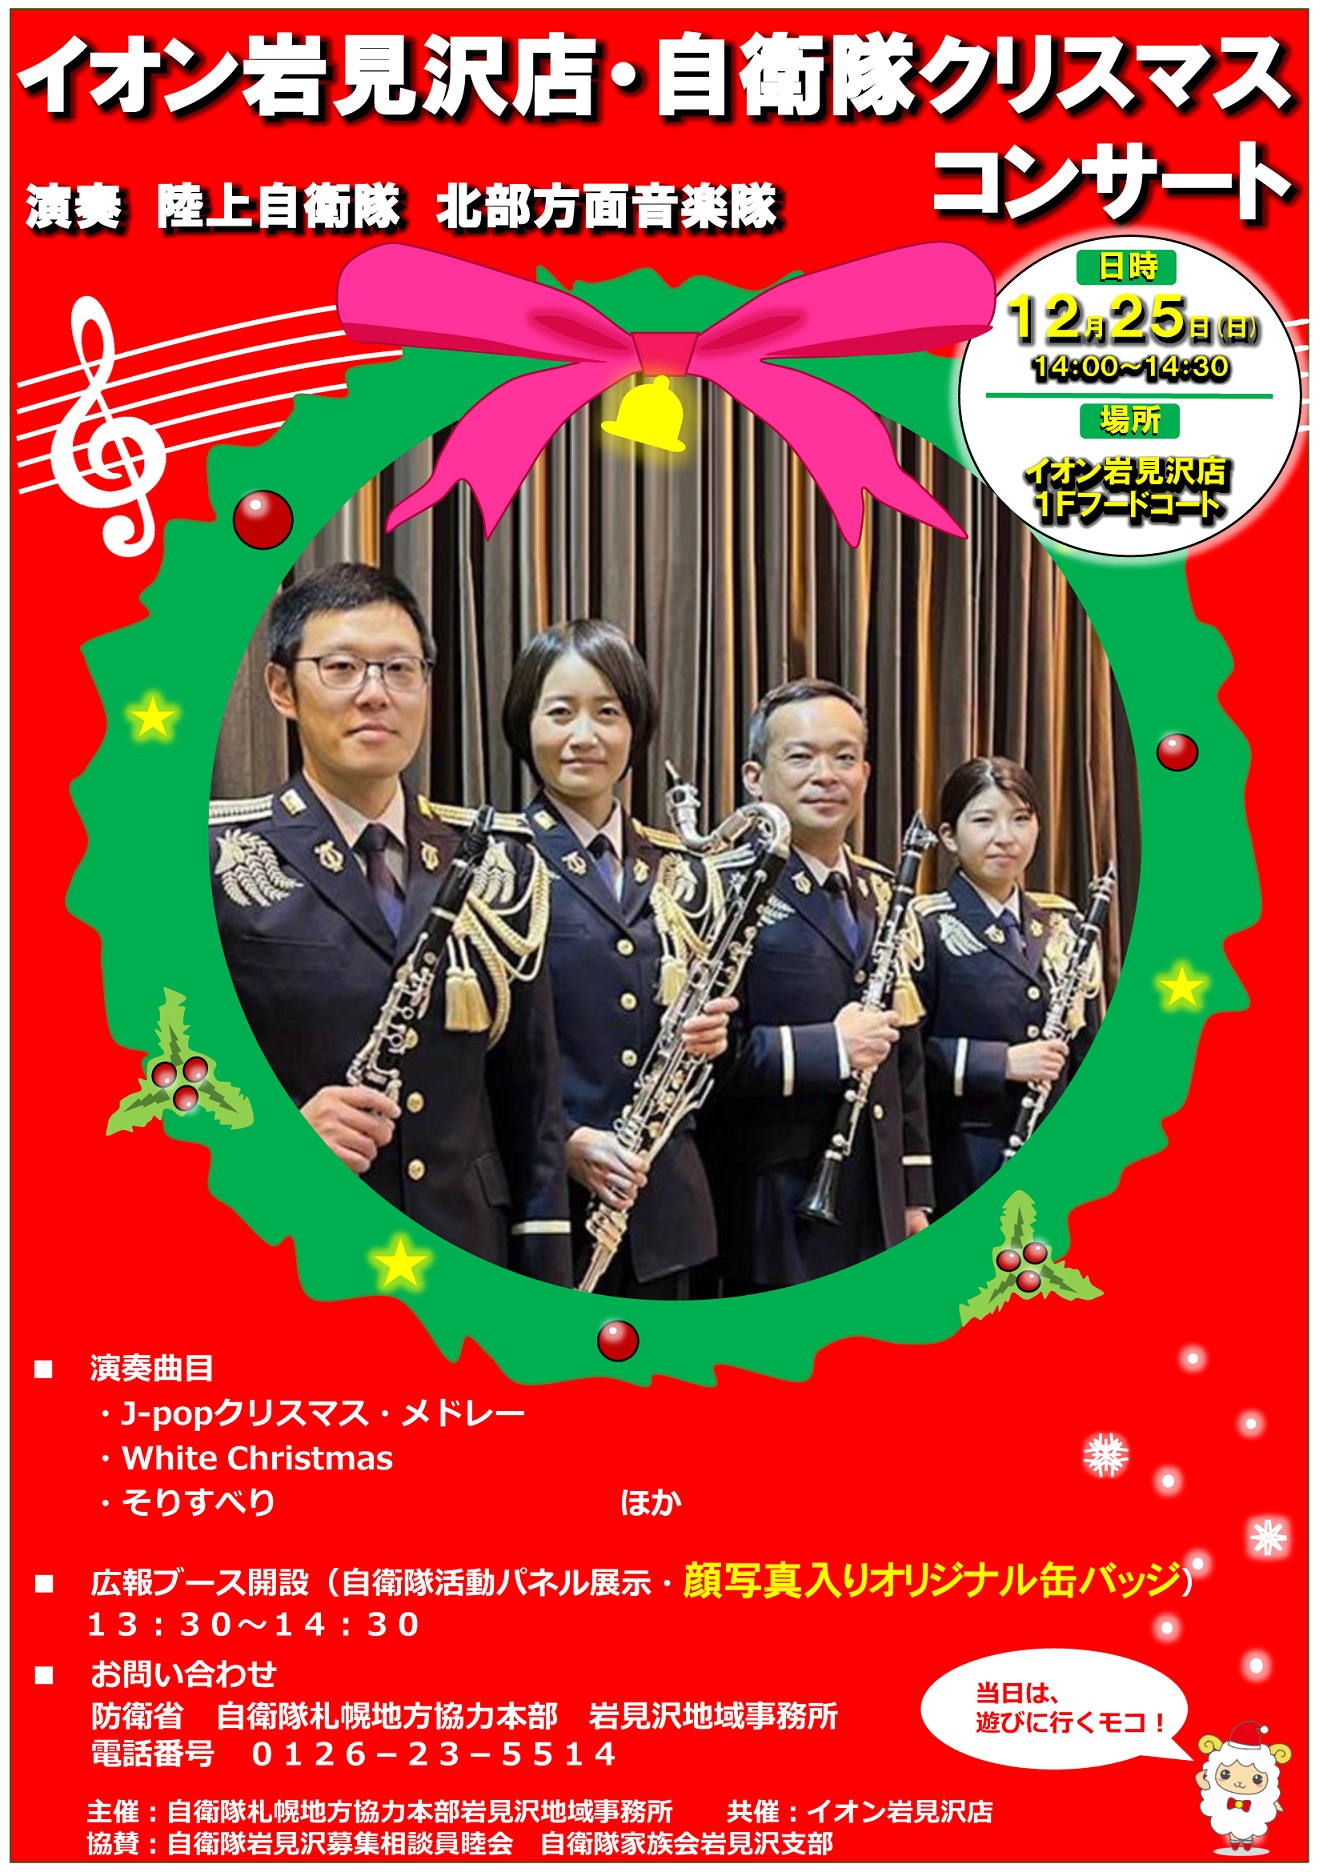 北部方面音楽隊 クリスマスコンサート2022 in イオン岩見沢店ポスター